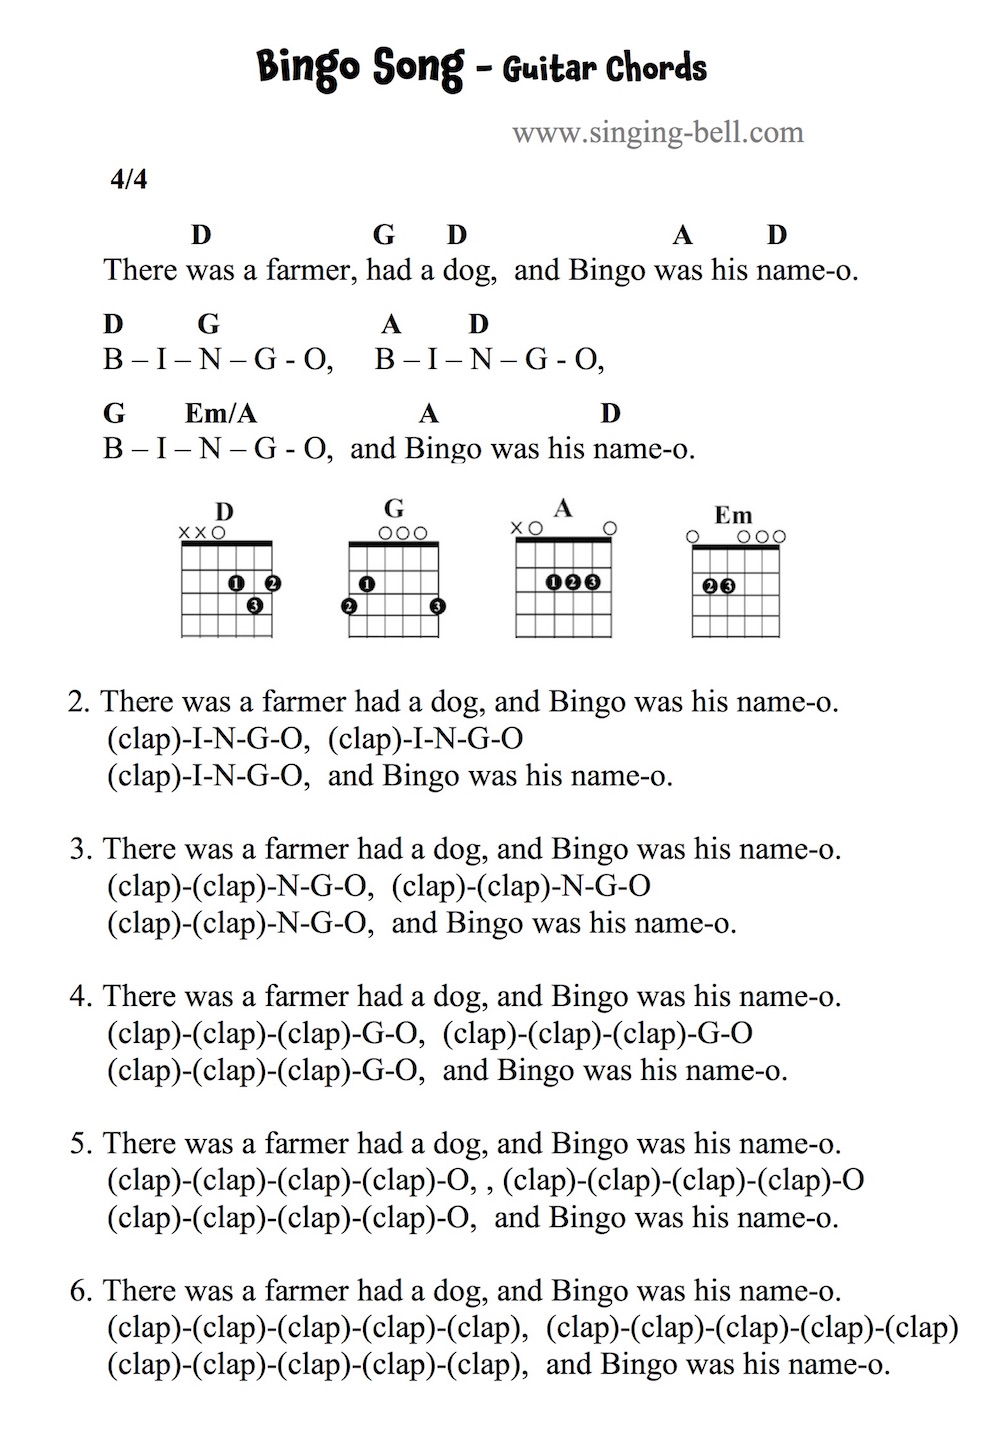 Bingo Song Guitar Chords Tabs Sheet Music Printable Pdf